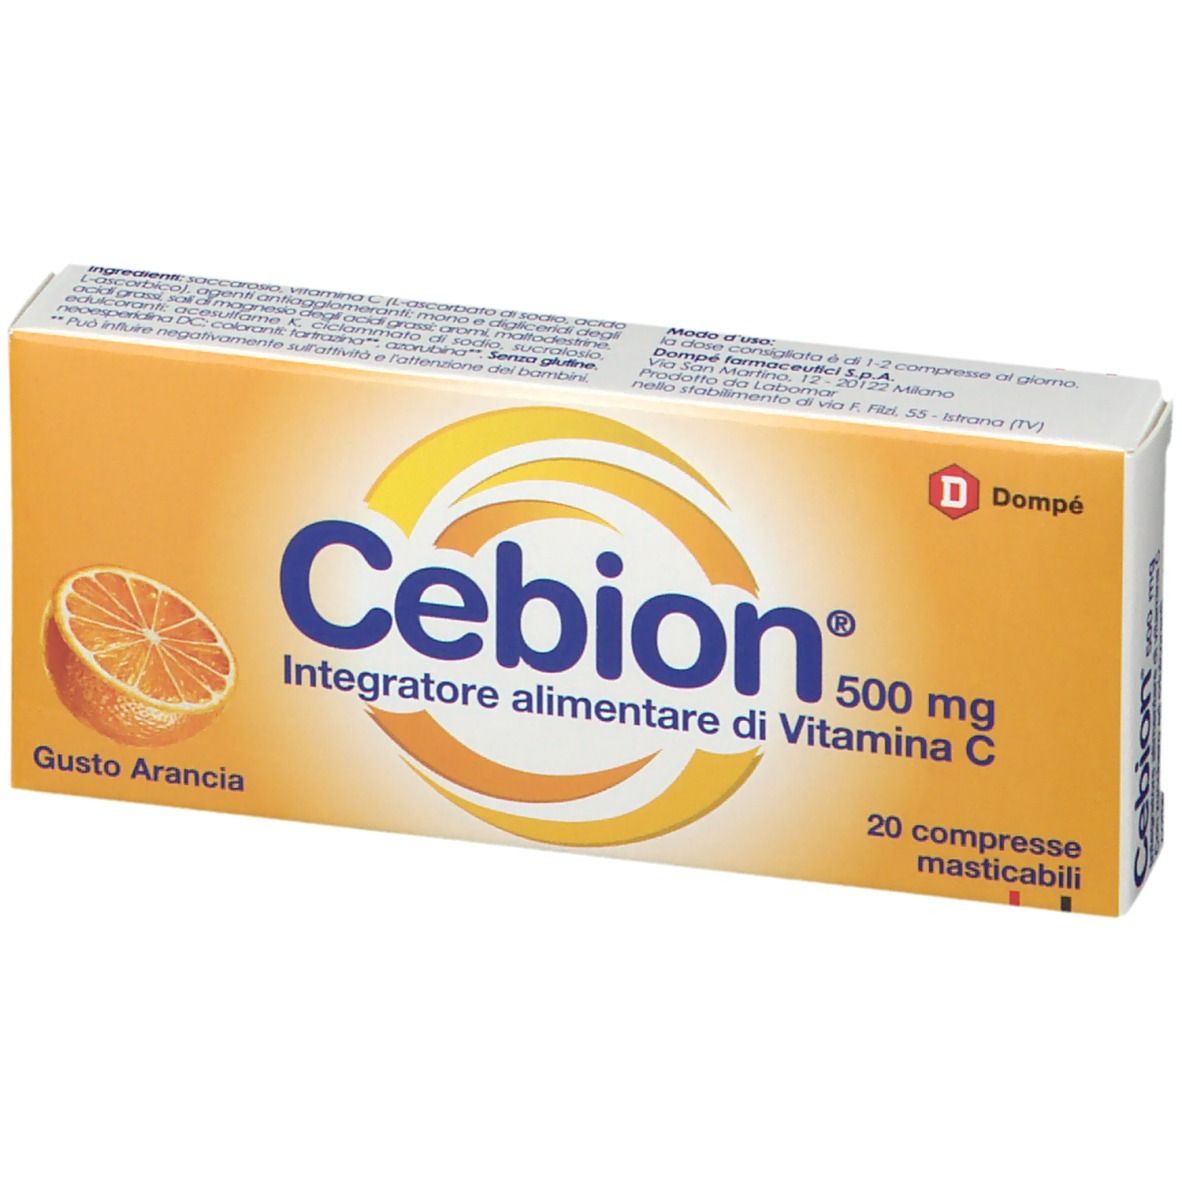 Cebion® Compresse Masticabili Gusto Arancia